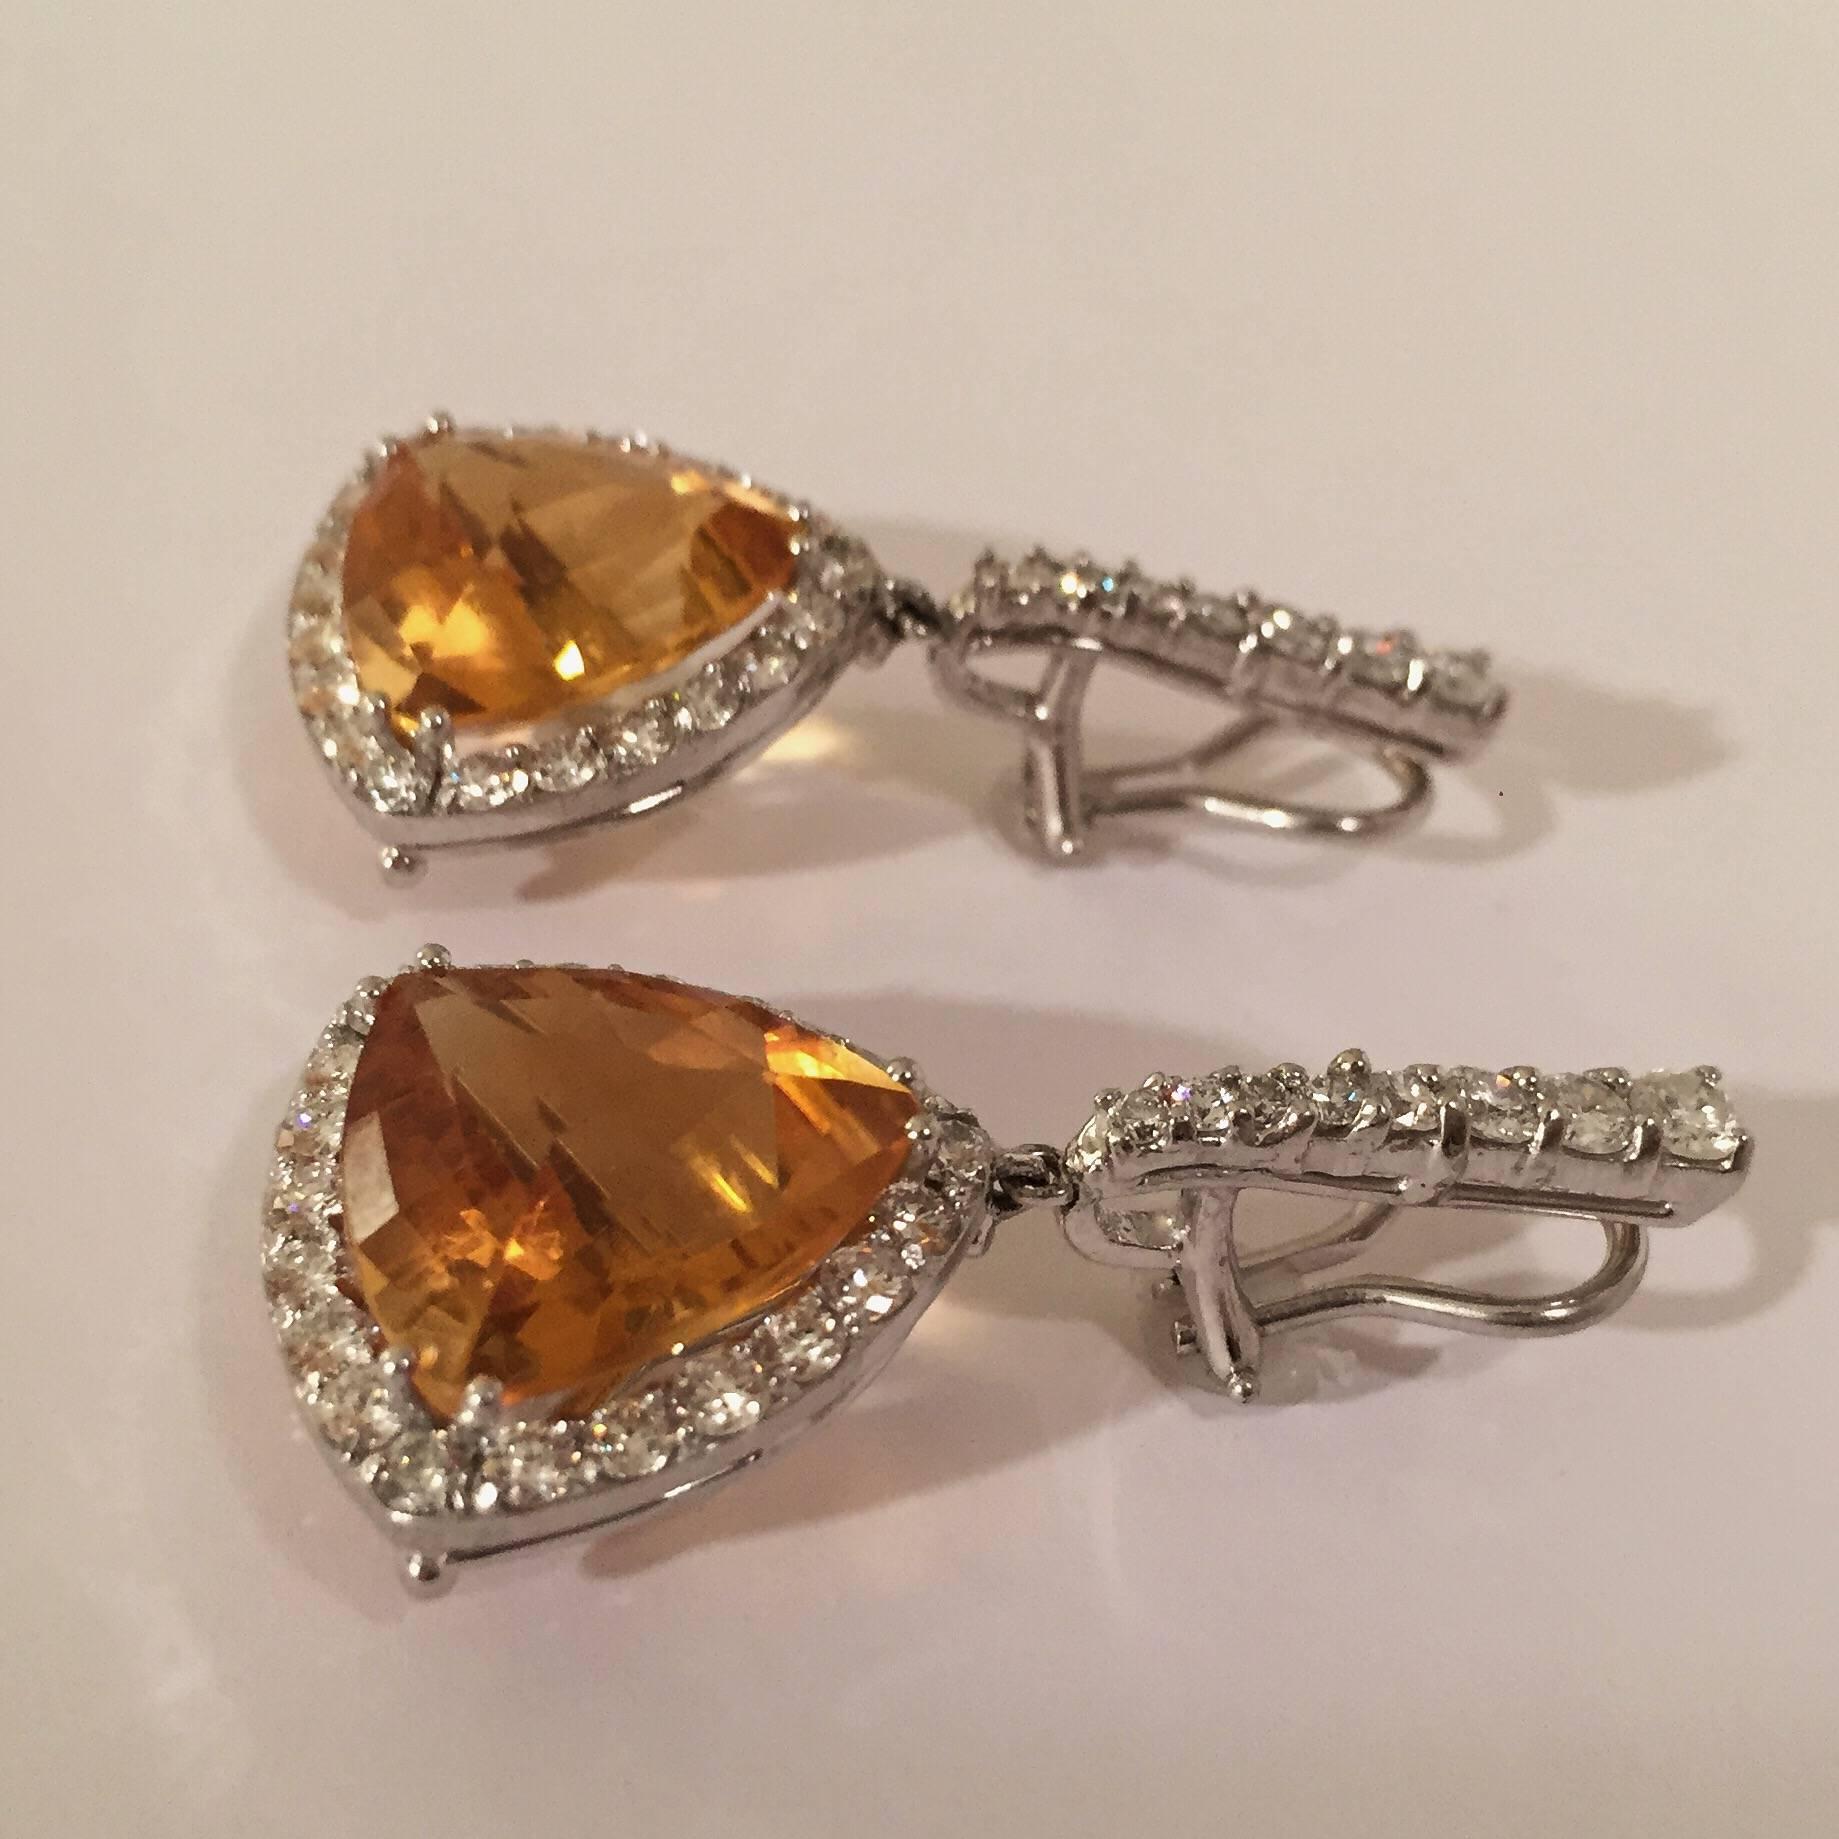 boucles d'oreilles pendantes en or blanc 18 carats, entourées de citrines orange triangulaires taillées en coussin  par environ 4,50cts de diamants blancs.

La citrine mesure environ 3/4